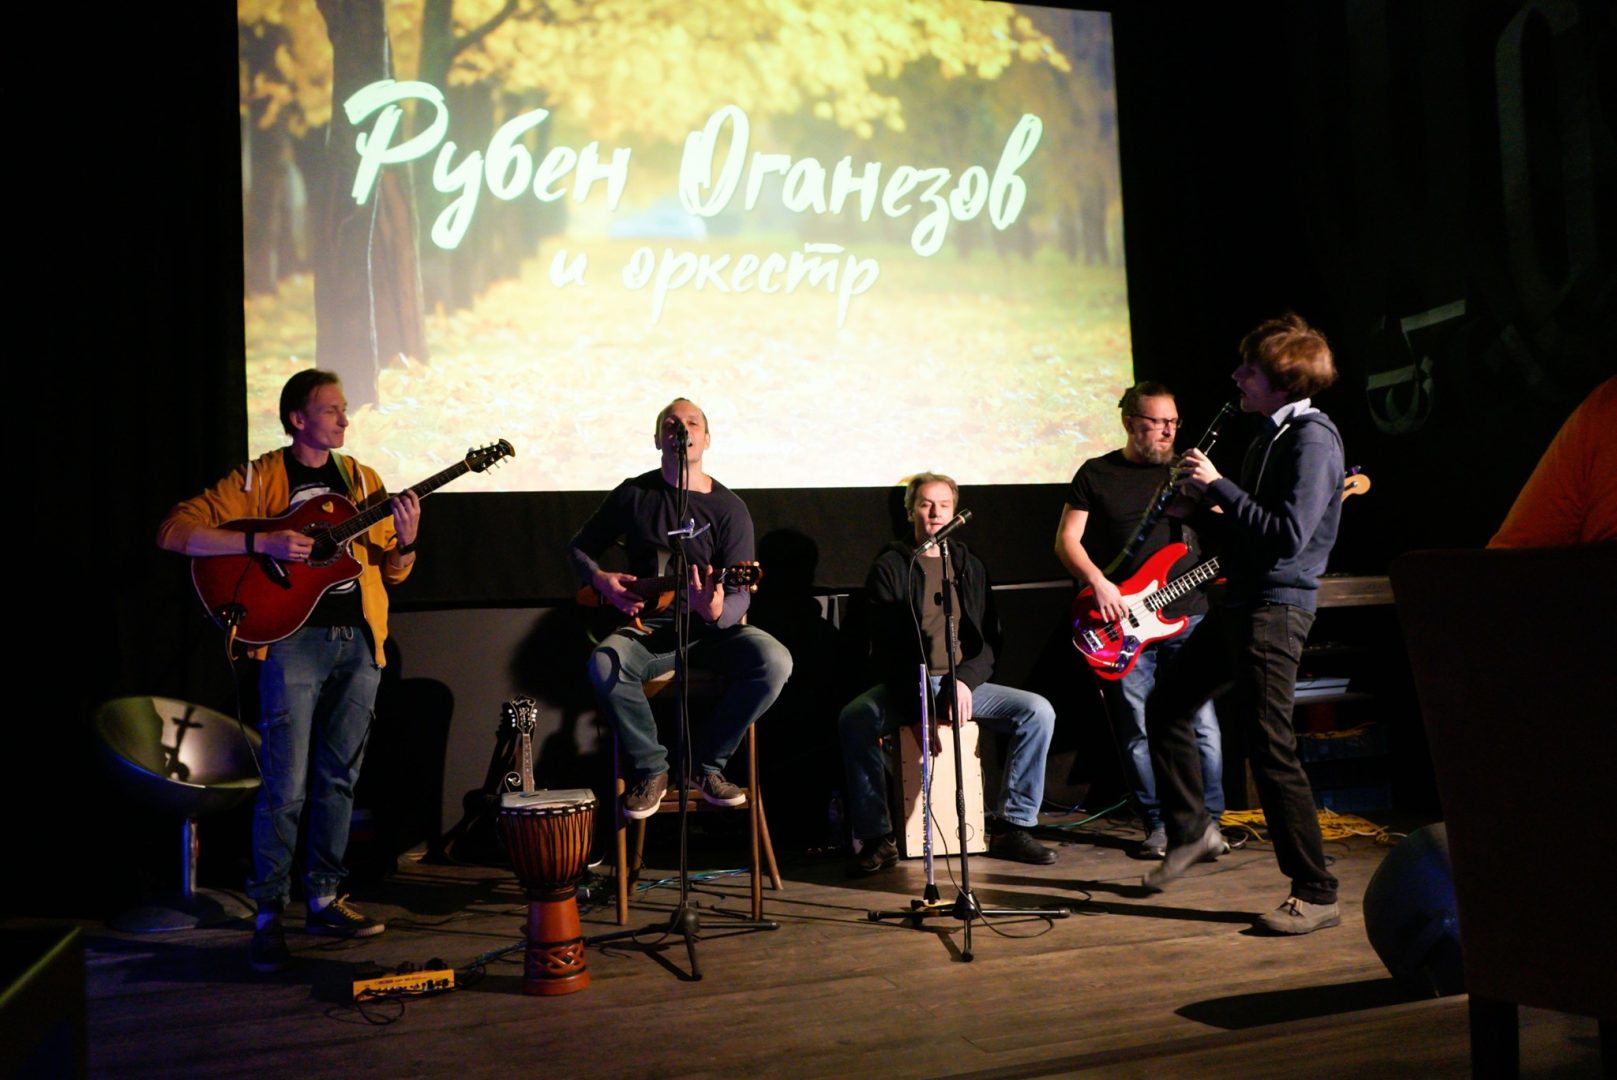 Музыканты представят свою творческую программу в Троицком Доме ученых. Фото официальная страница Дома ученых в социальных сетях